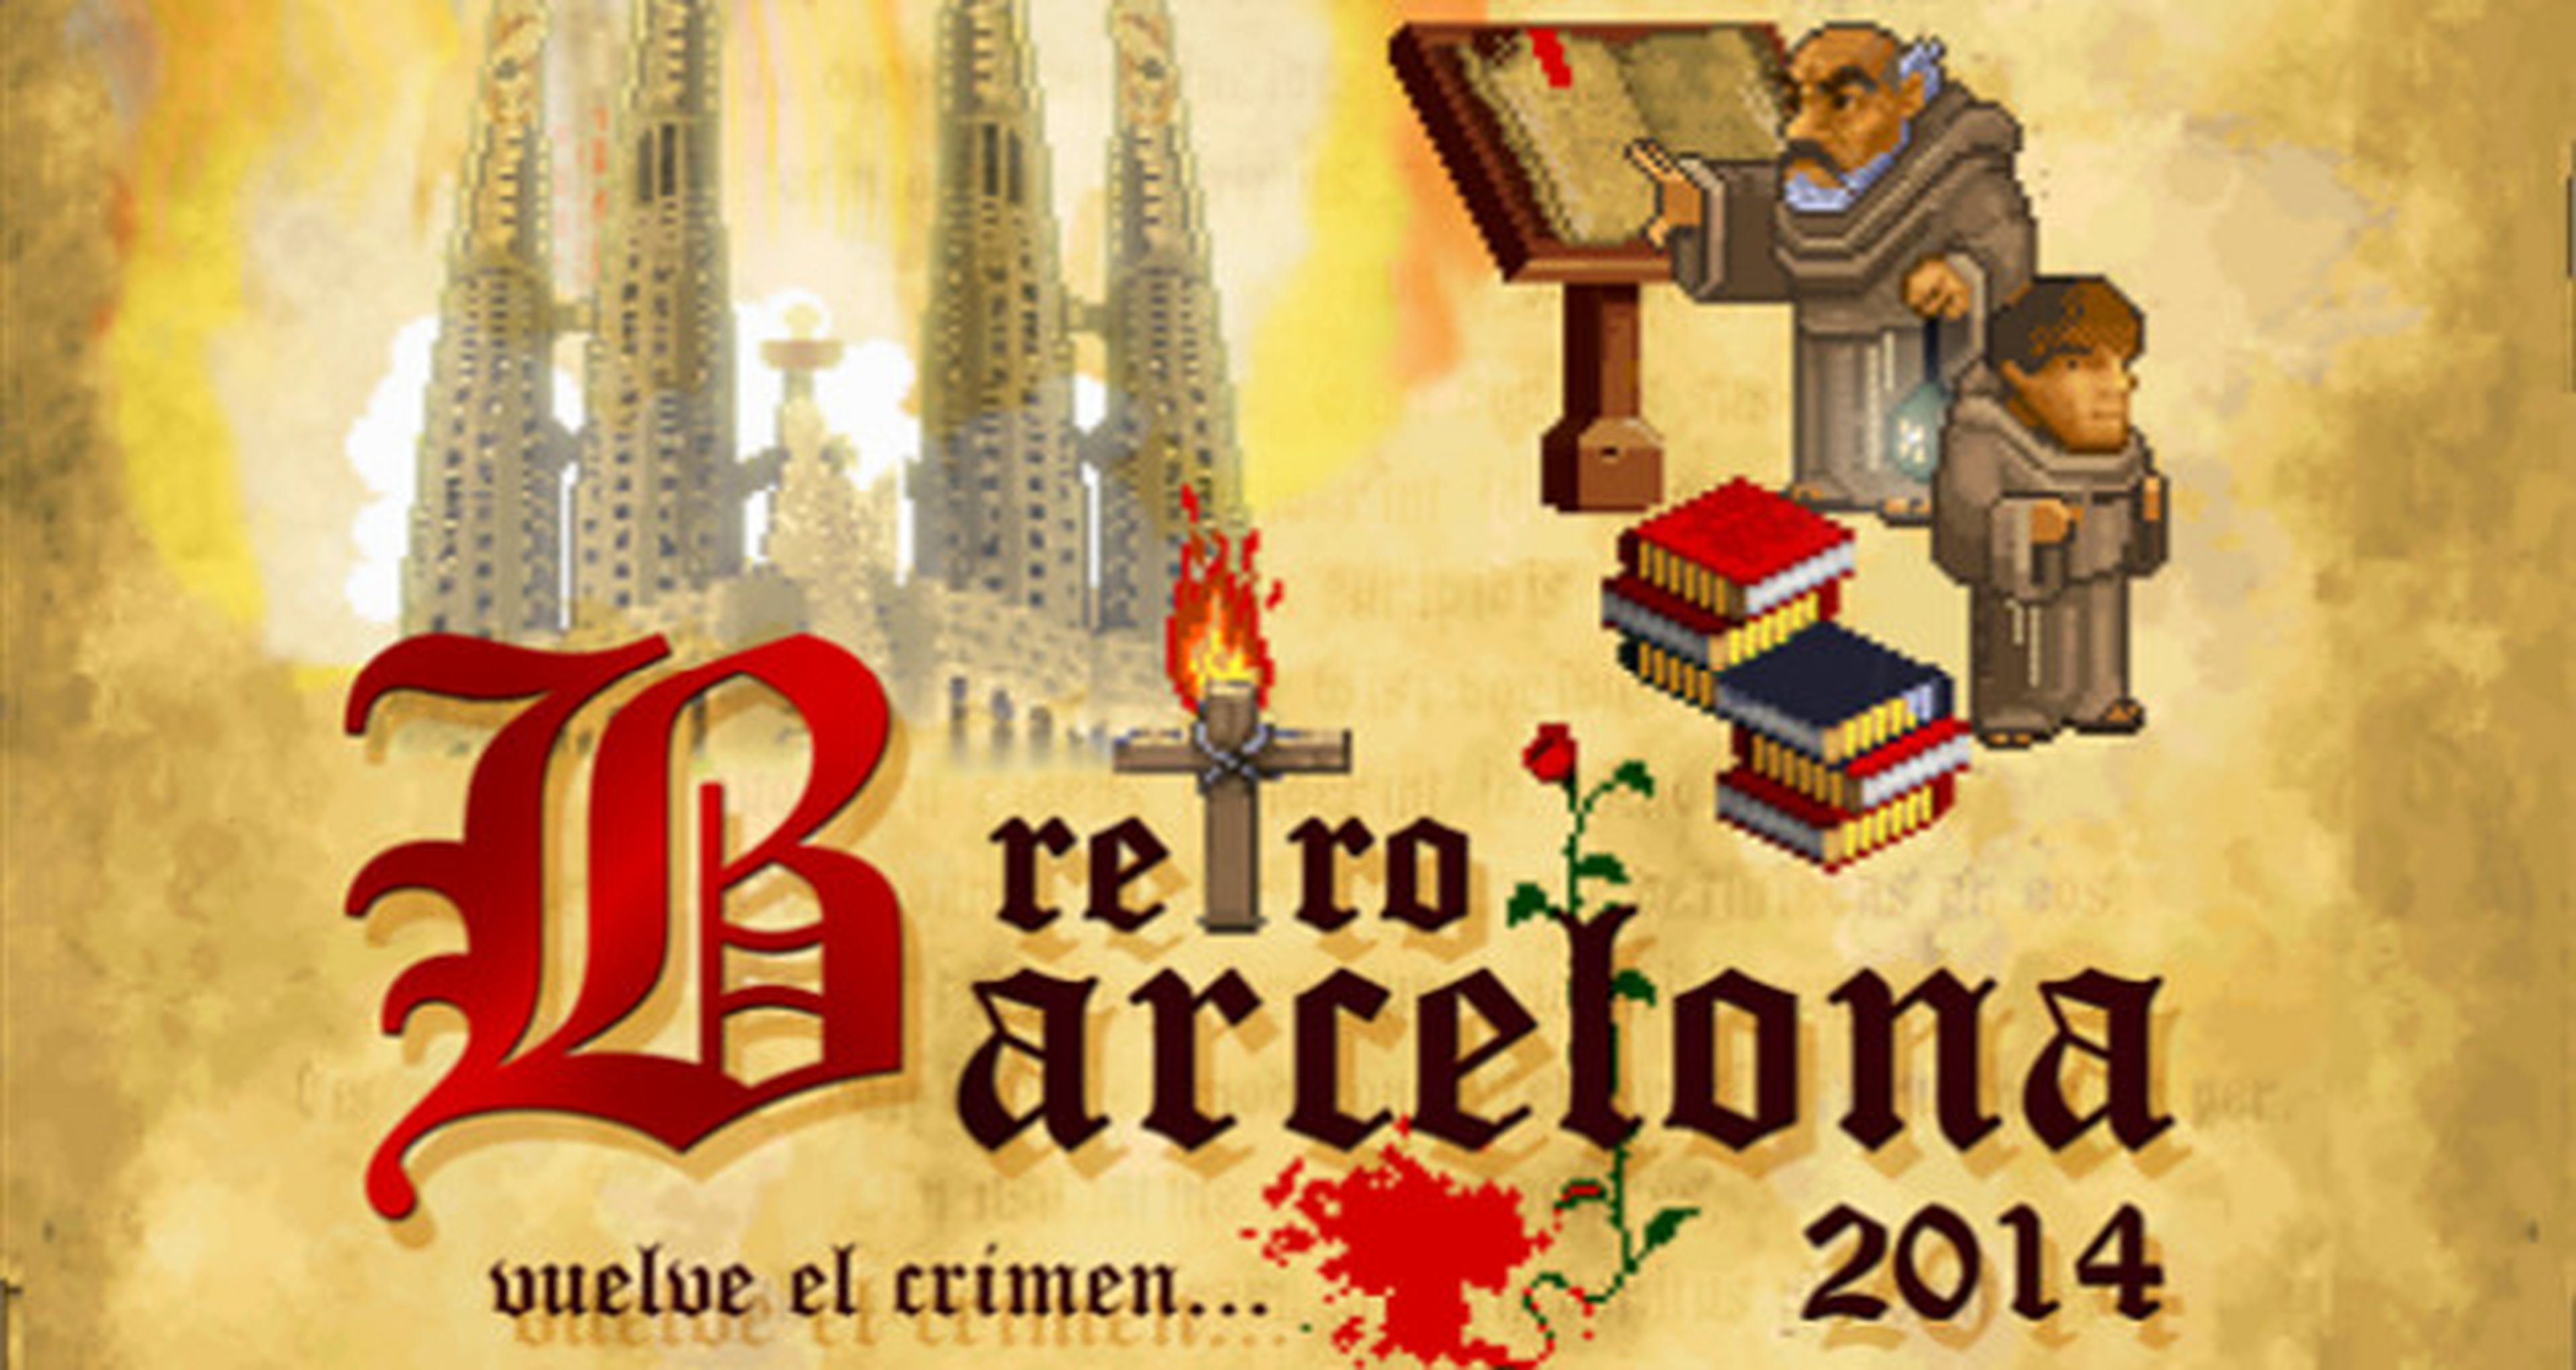 Retrobarcelona 2014 abre sus puertas el 22 y 23 de noviembre